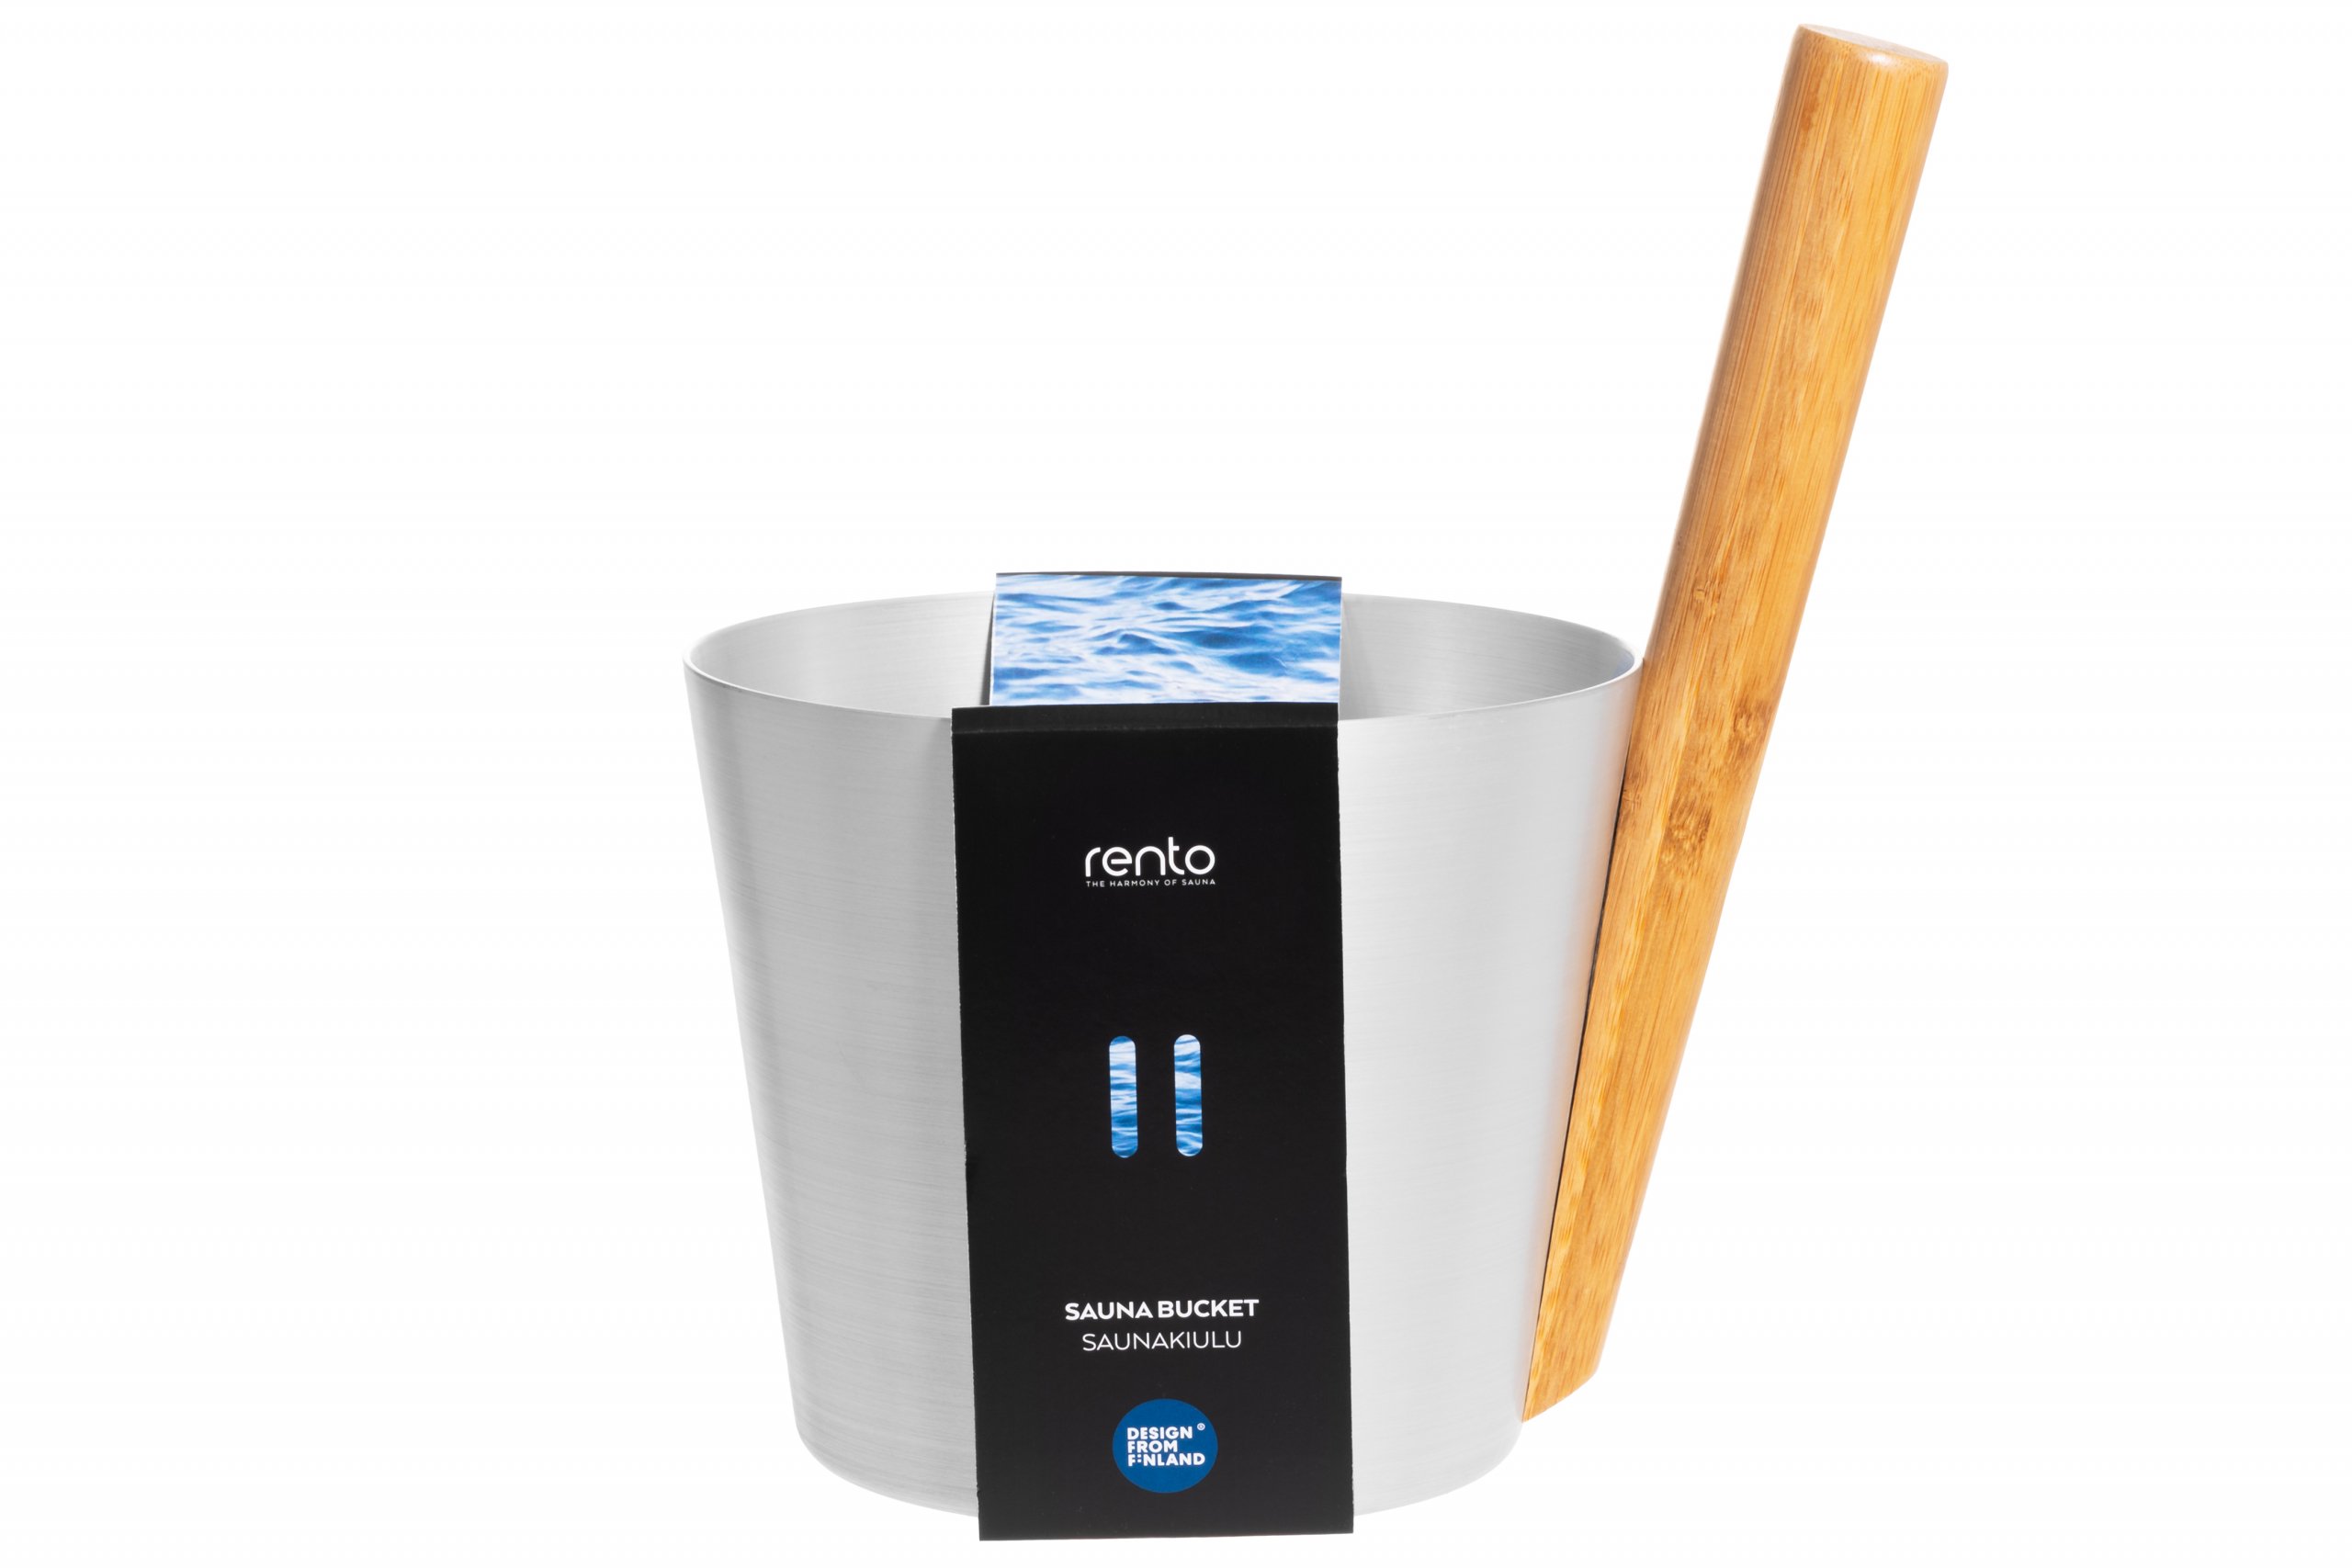 Rento Sauna Design Bucket with handle - aluminum